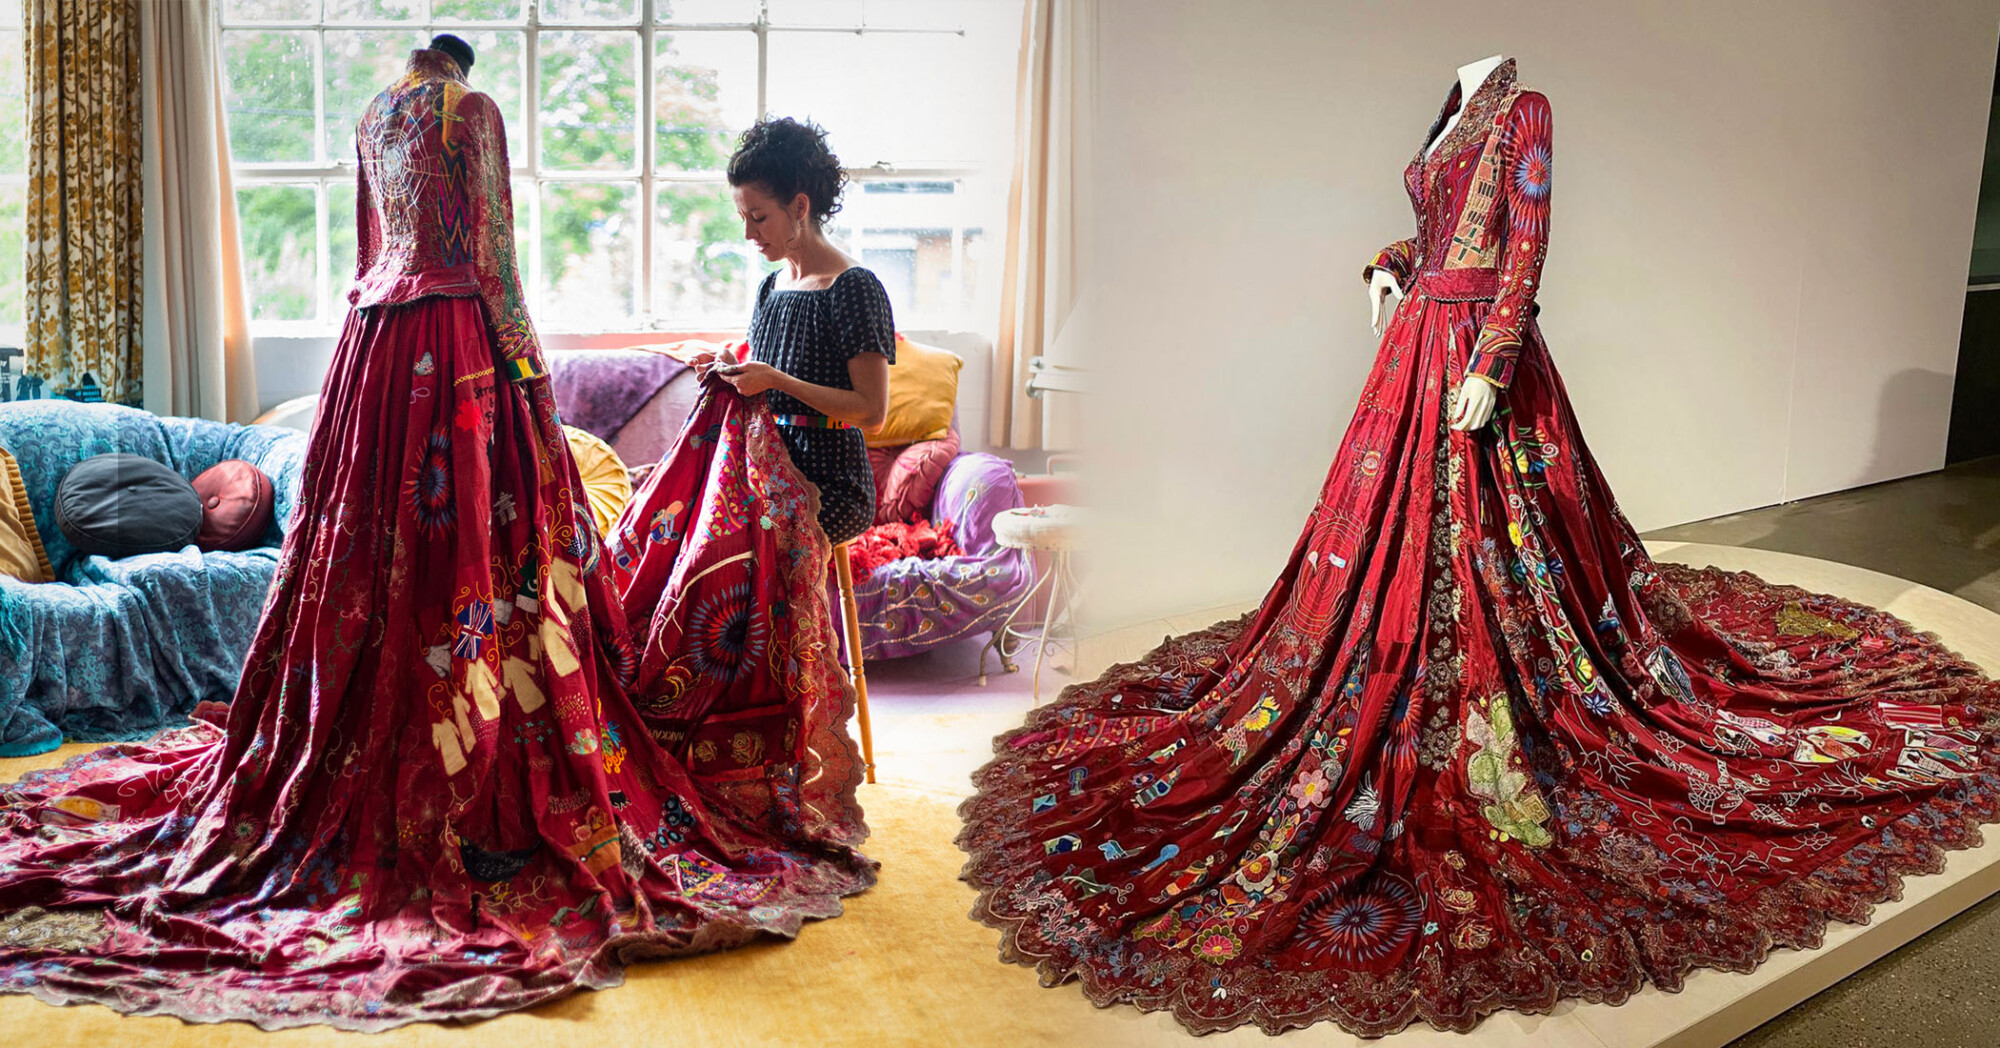 Une robe rouge étonnante, fabriquée par 370 artisans dans 50 pays pendant 13 ans, raconte l'histoire des femmes